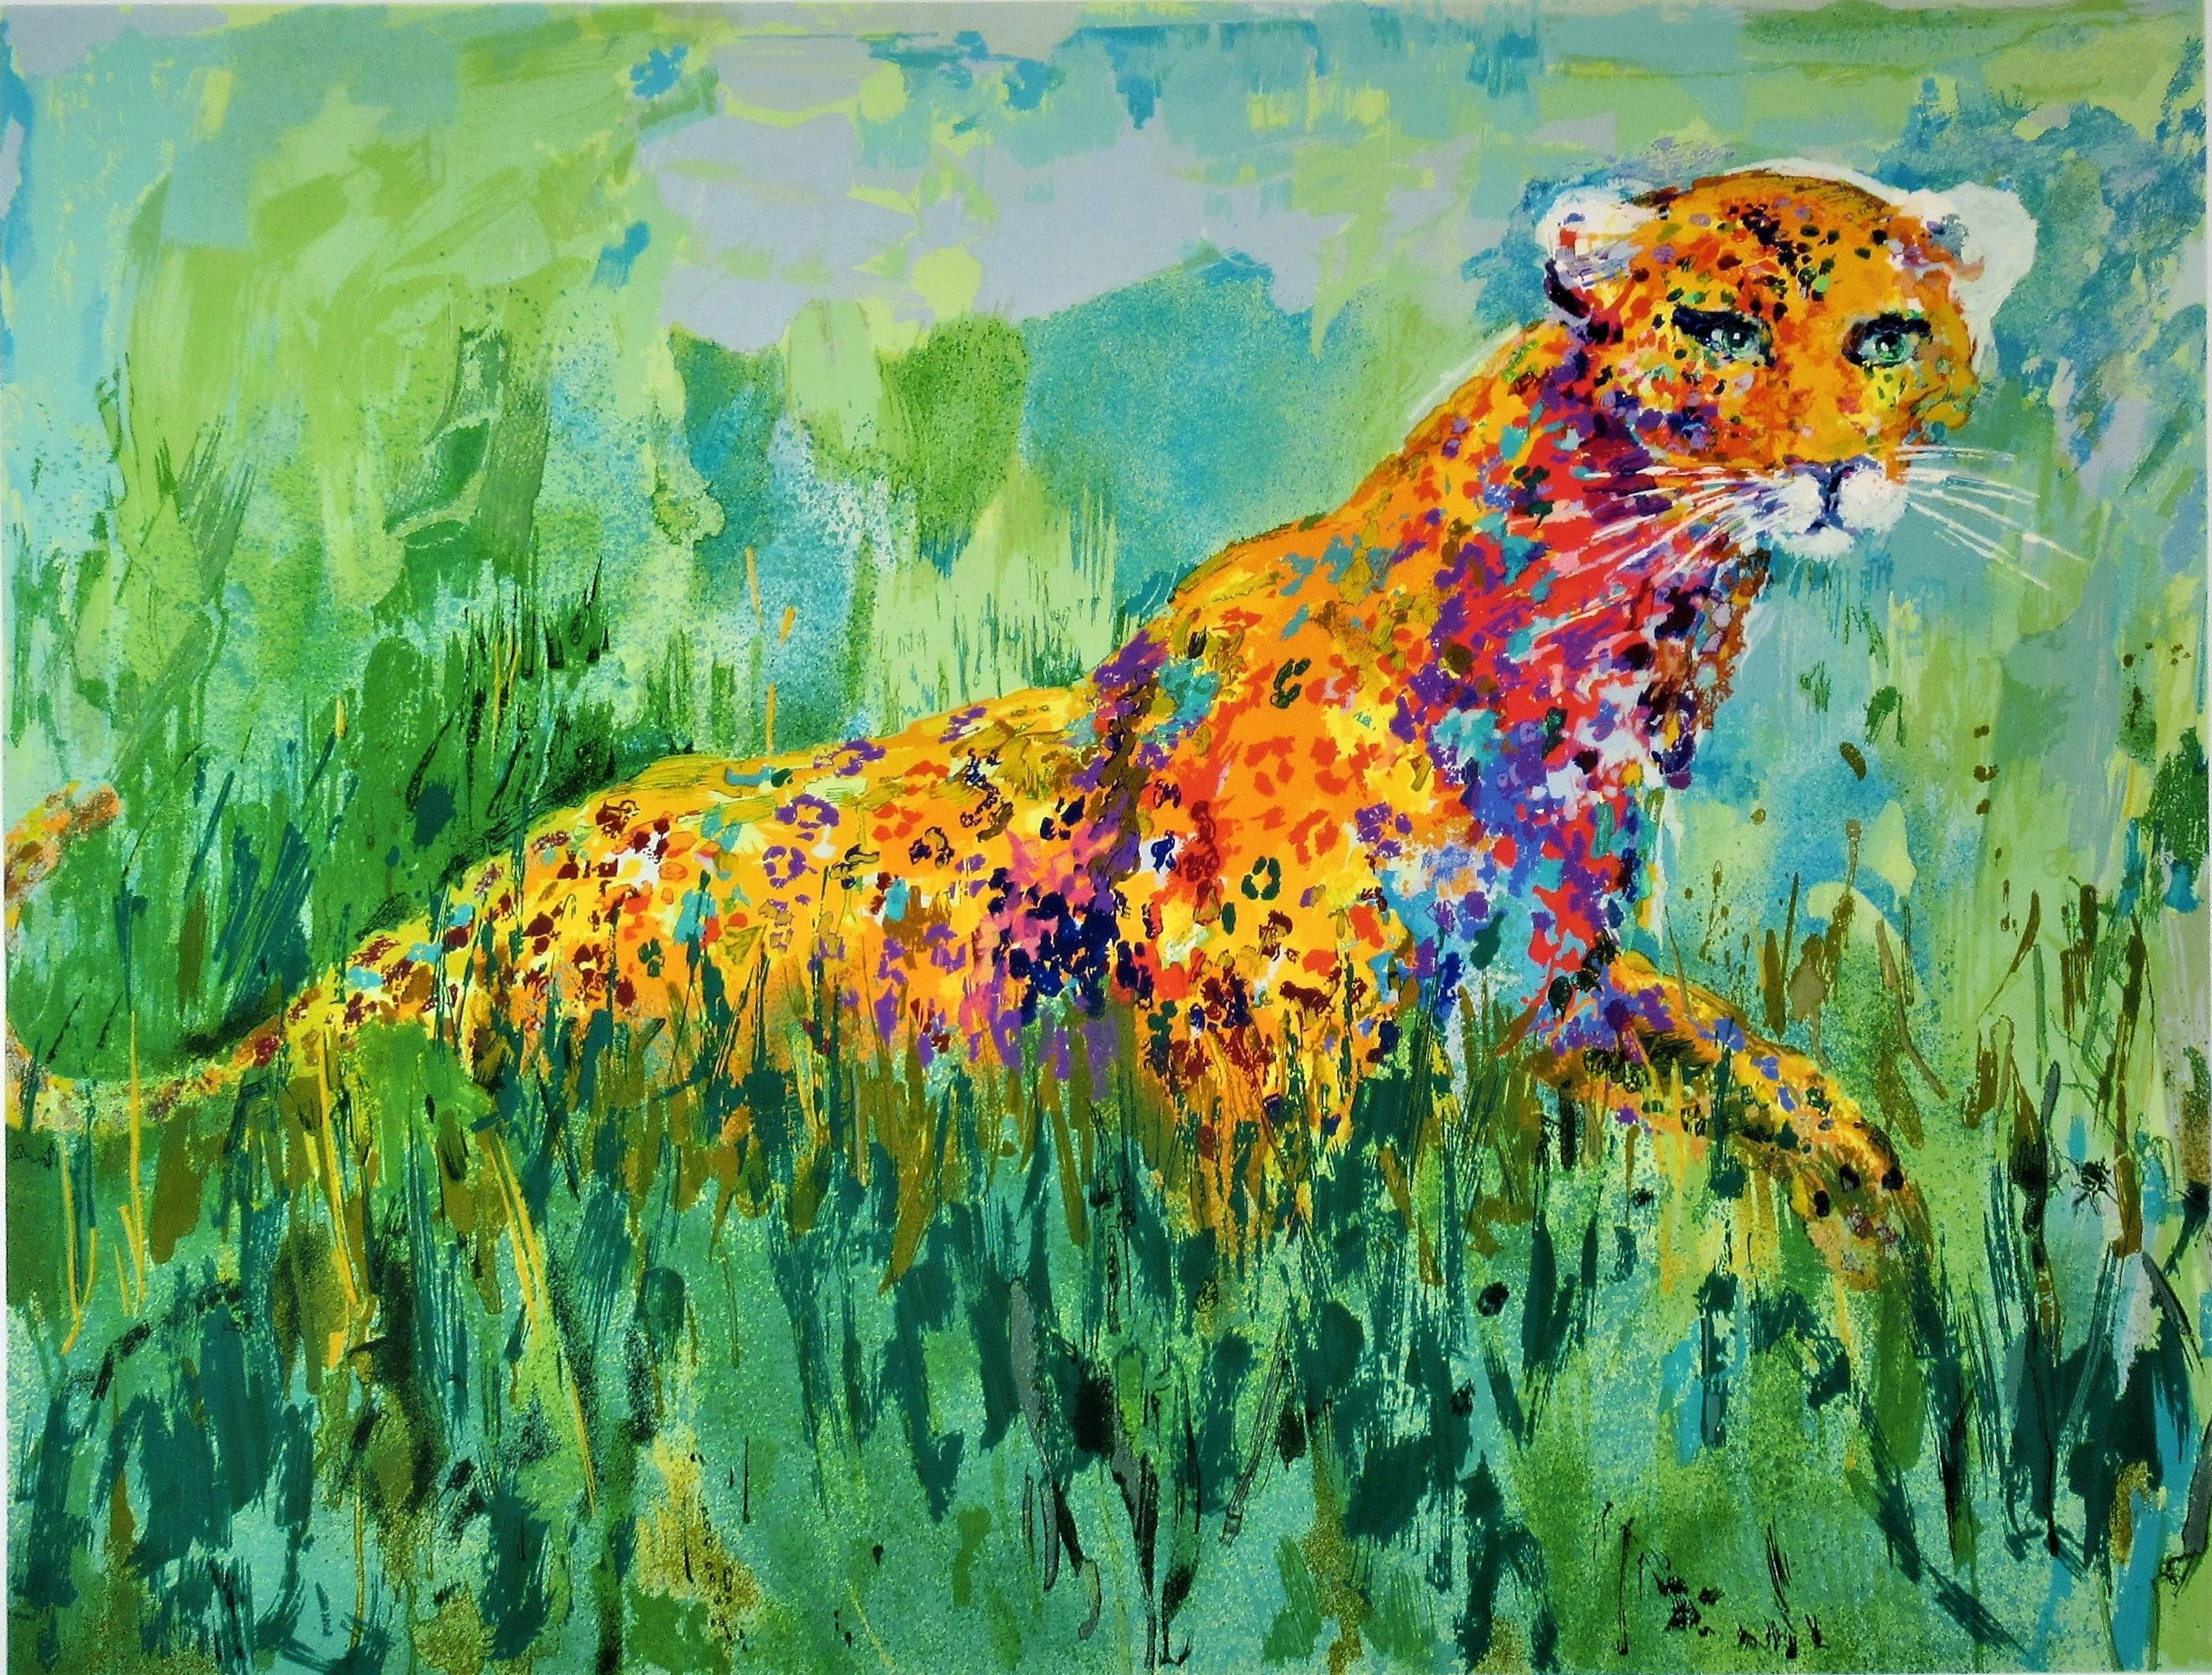 Prowling Leopard - Print by Leroy Neiman